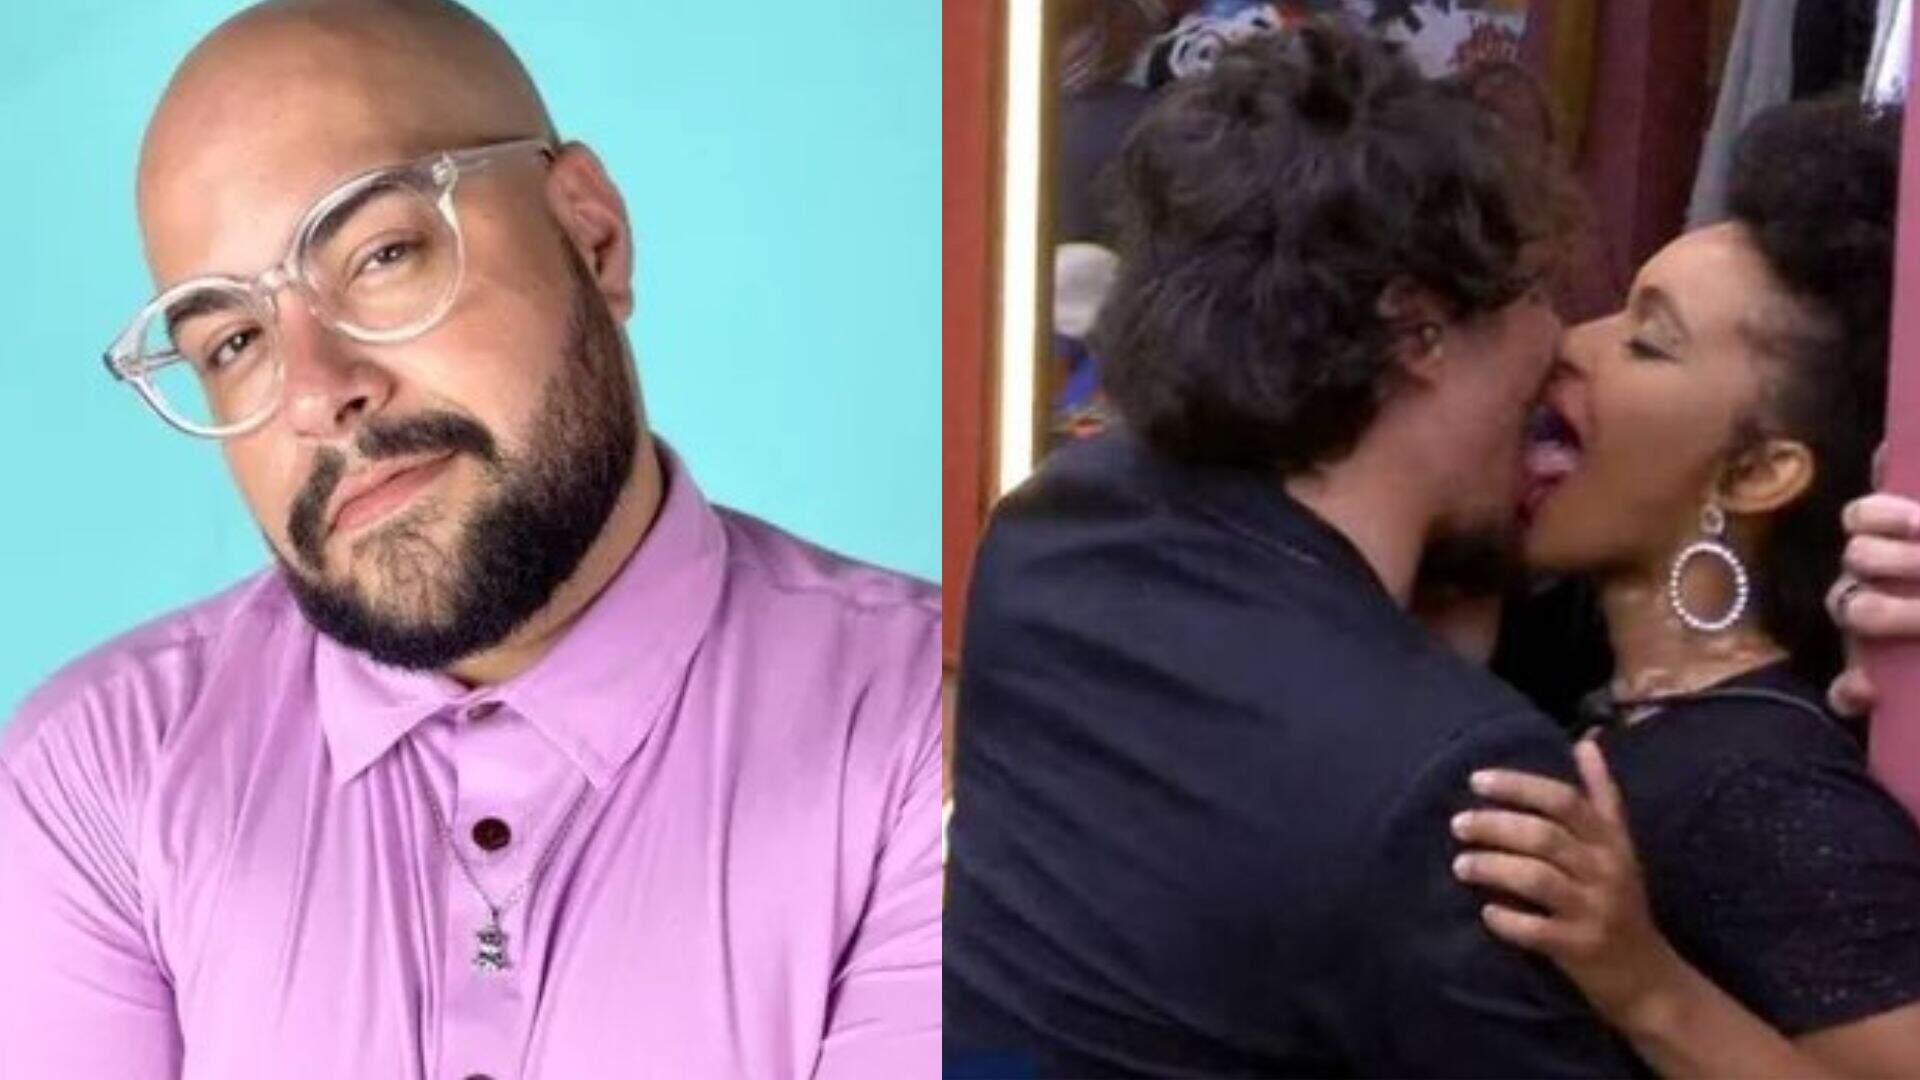 Tiago Abravanel choca a web ao revelar que se m*sturbou vendo Eli e Natália tendo relações no BBB - Metropolitana FM